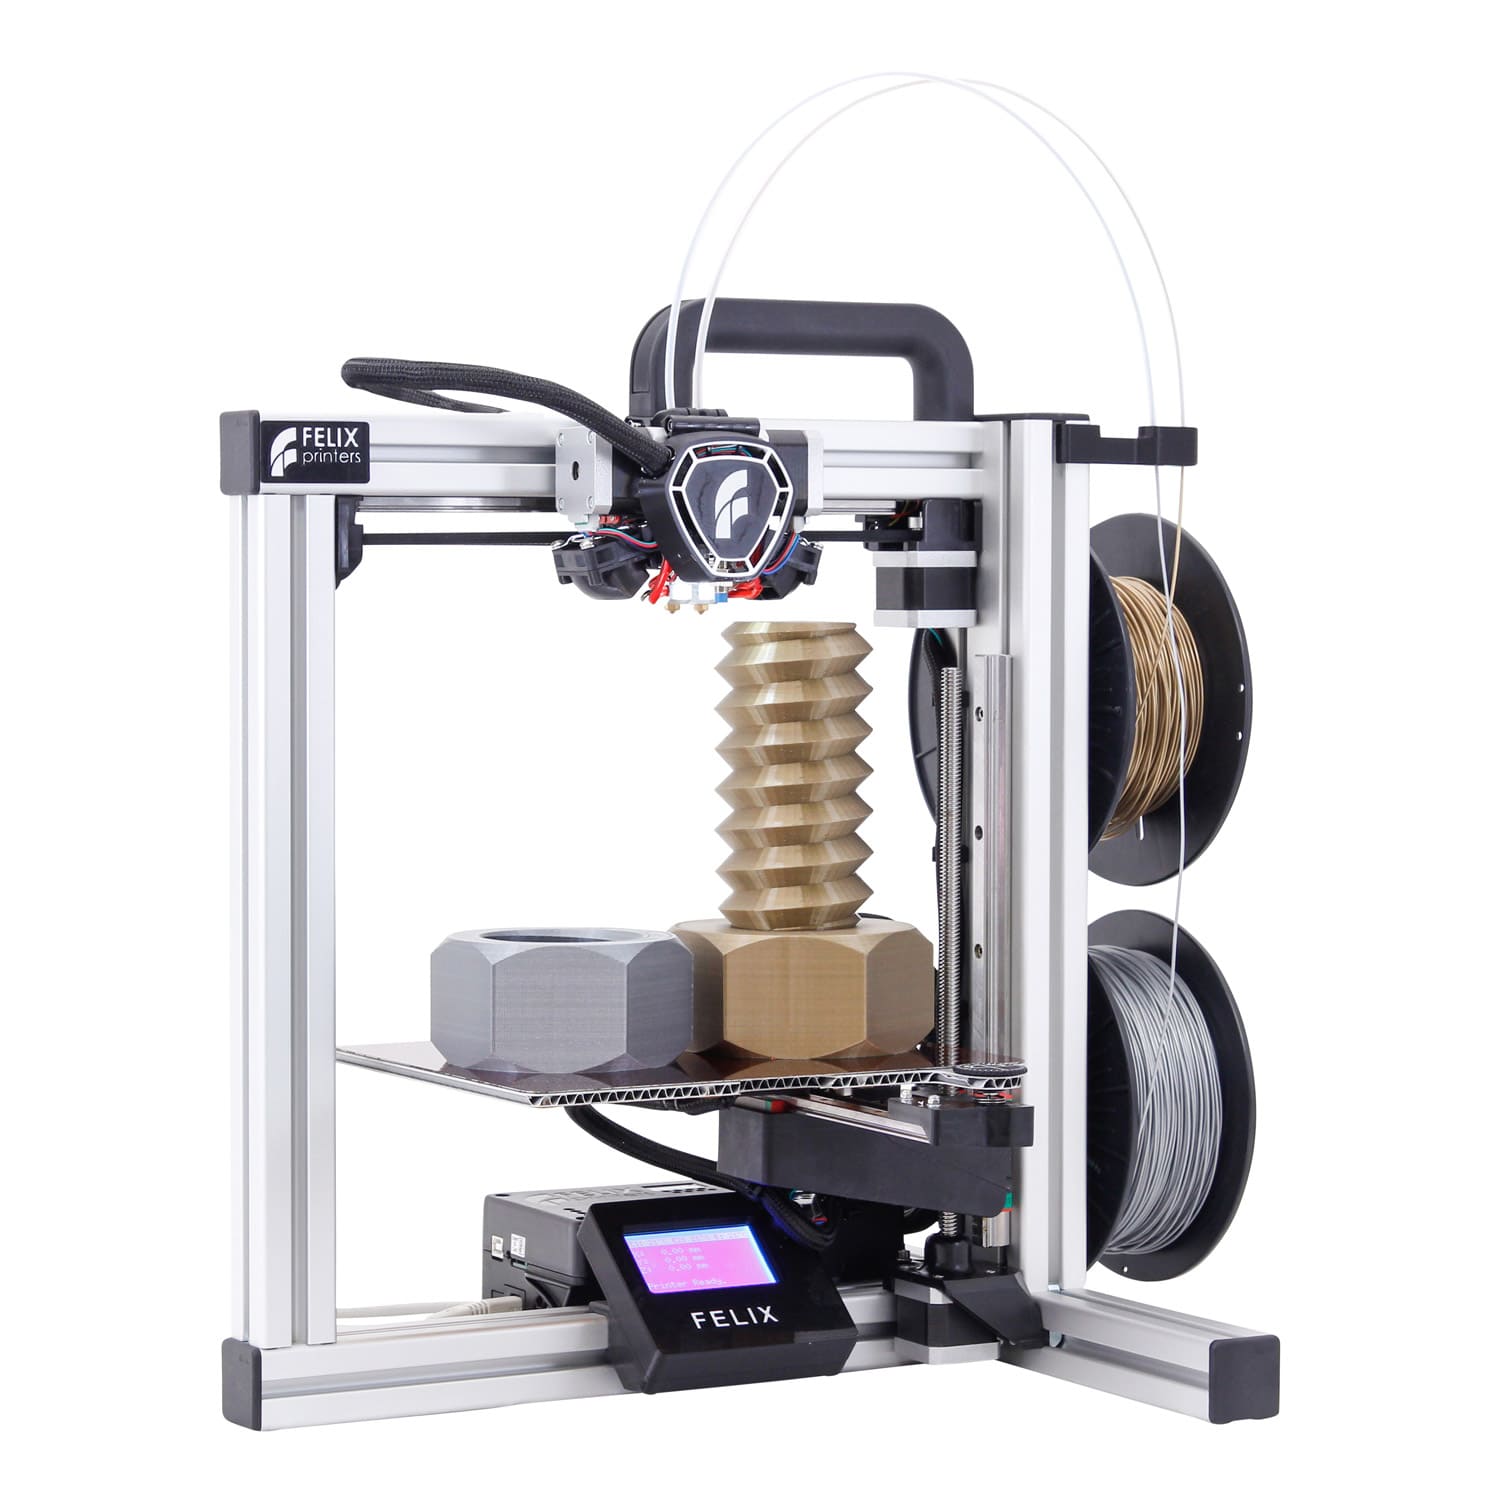 Изделия сделаное на 3D принтер Felix Tec 4 с 2 экструдерами